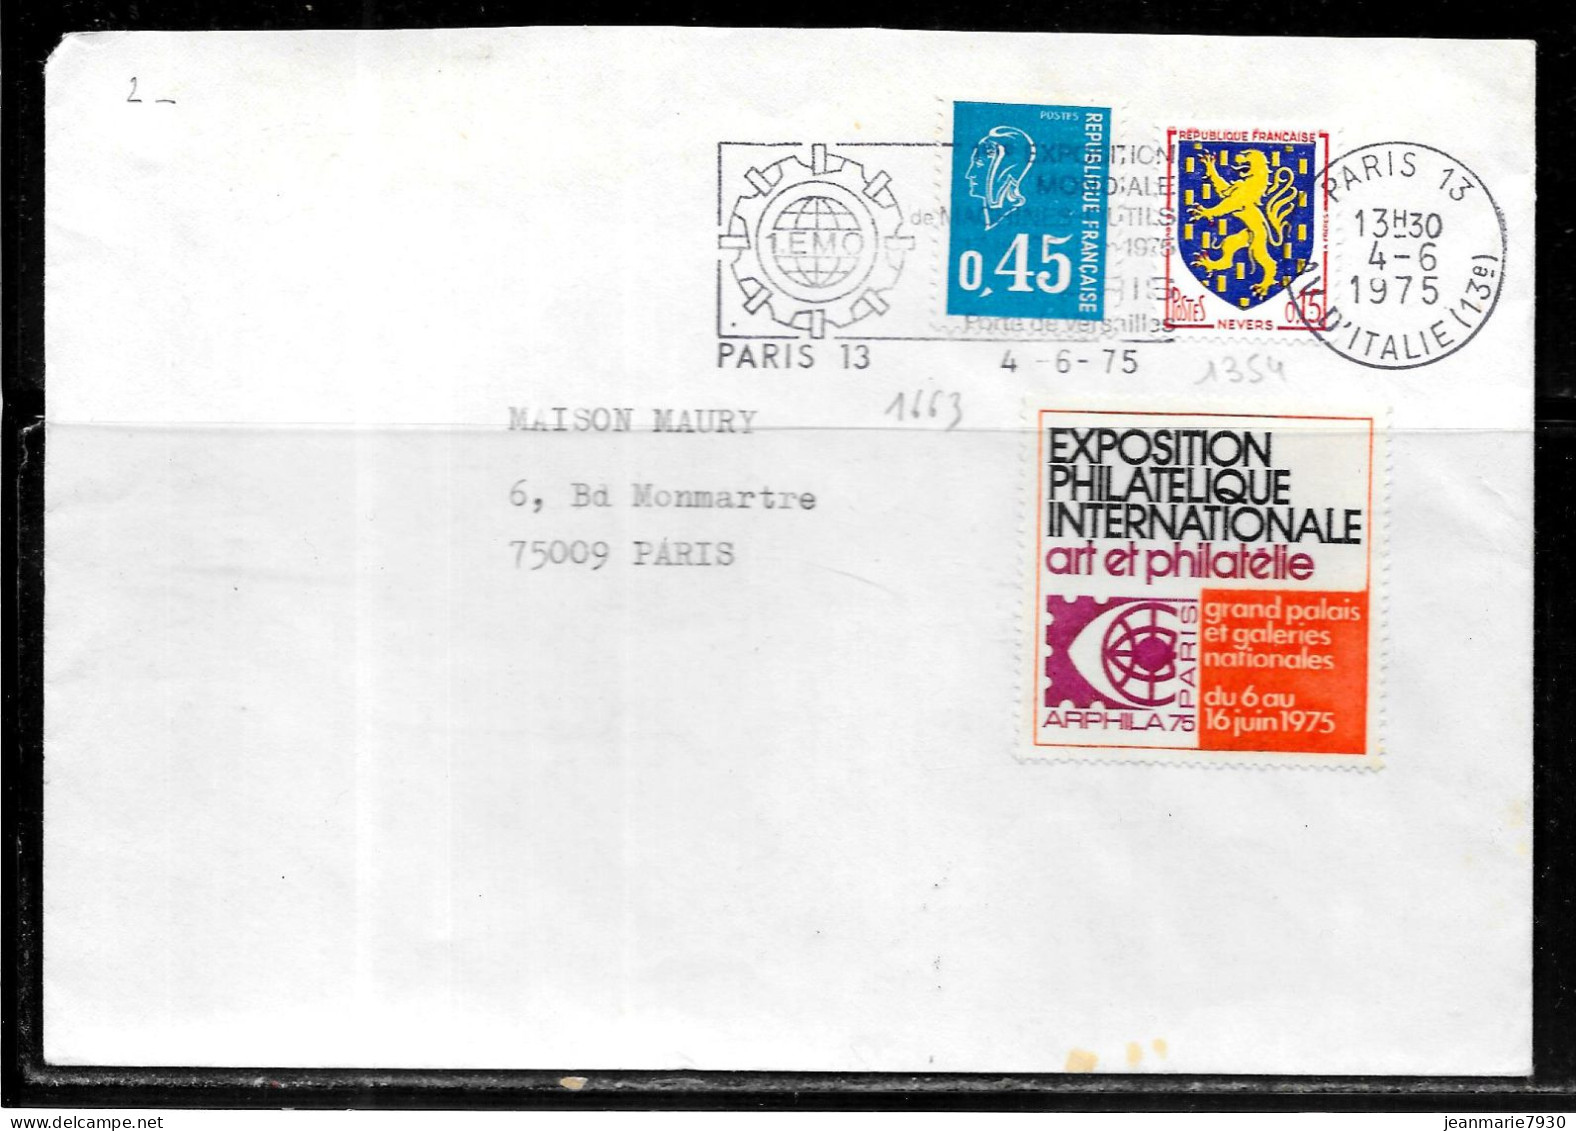 F269 - LETTRE DE PARIS 13 DU 04/06/75 - VIGNETTE ARPHILA 75 - Briefe U. Dokumente